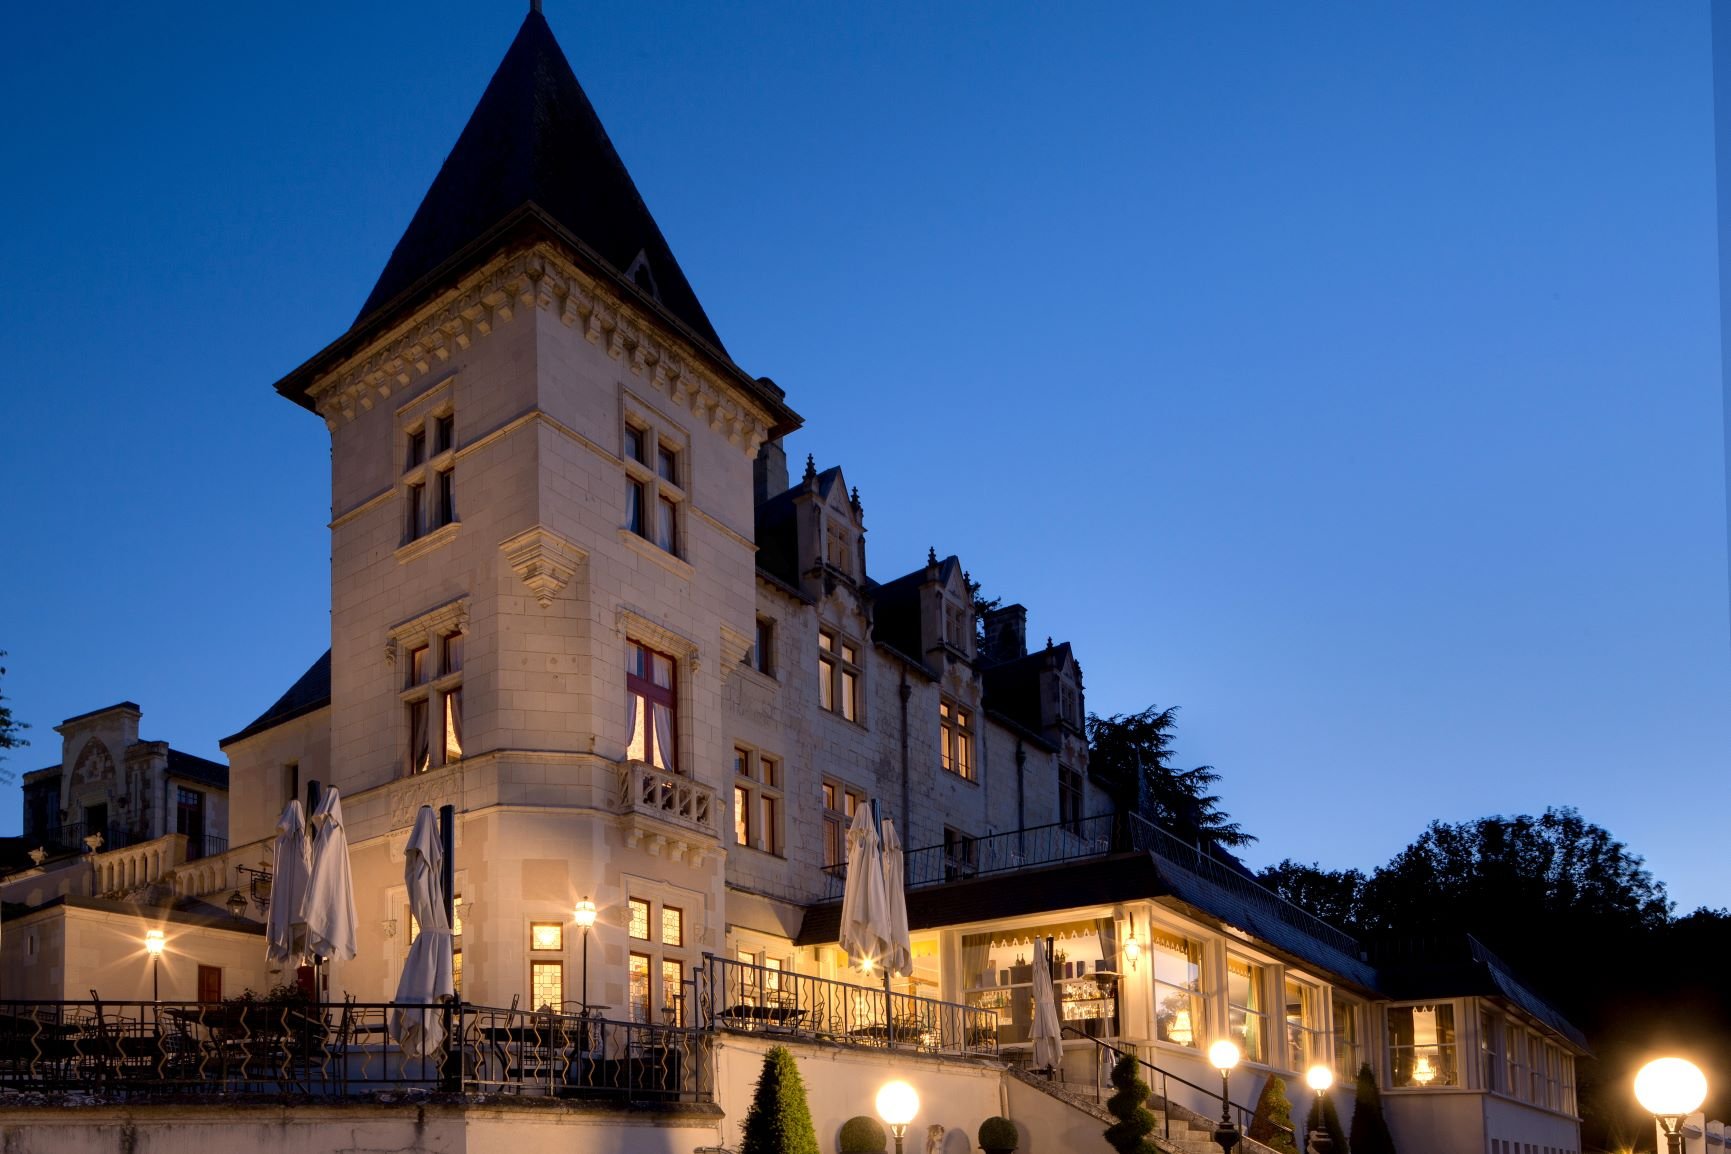 La Maison Younan | Luxury castle hotels in France